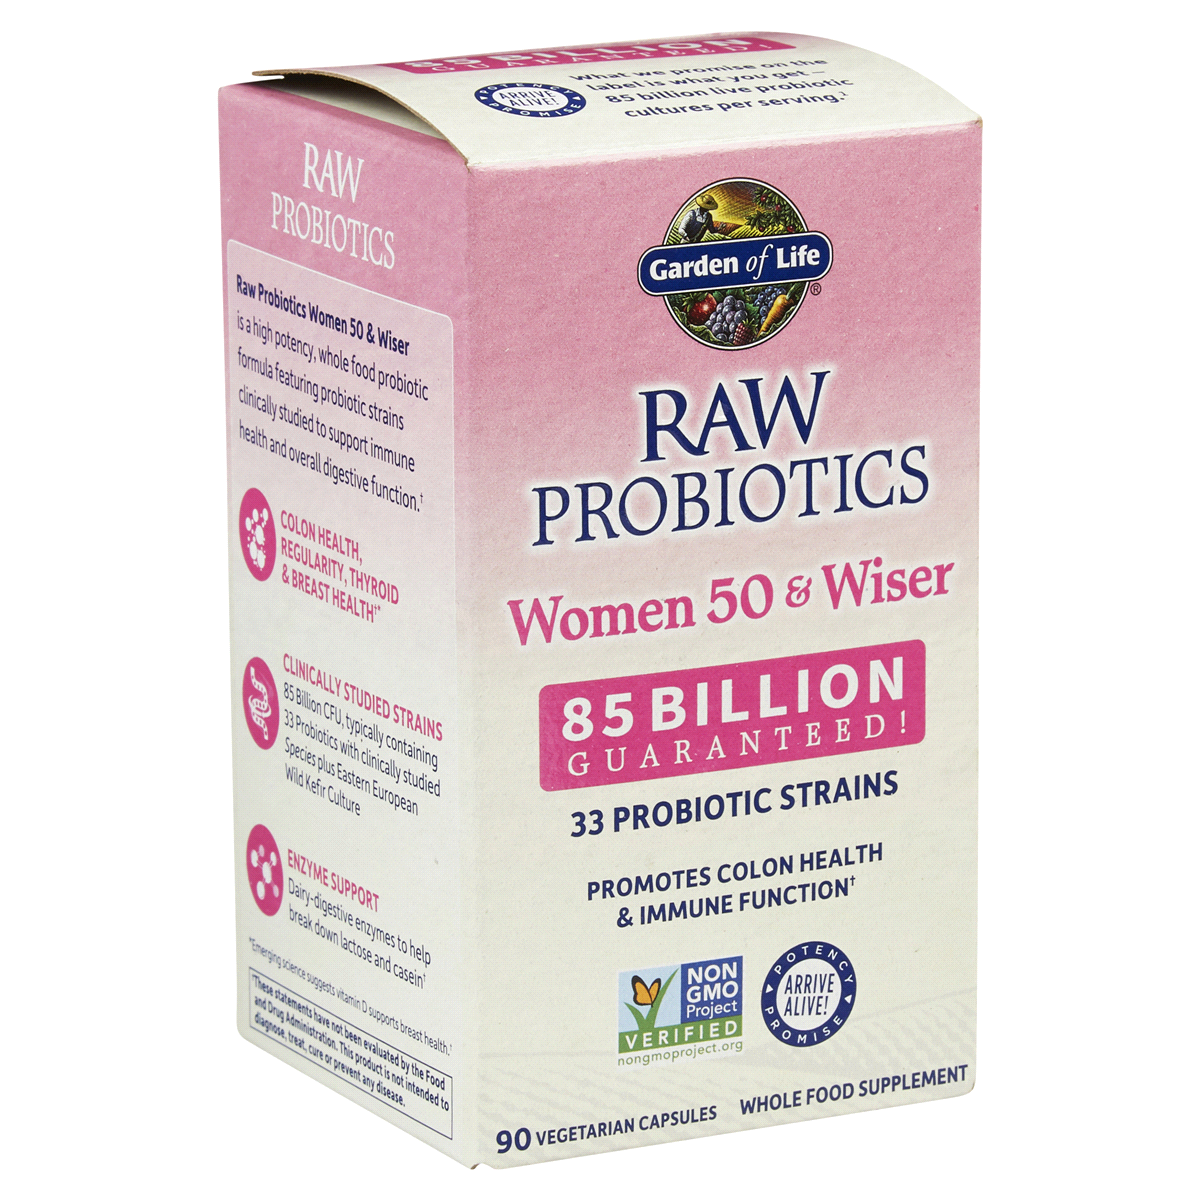 slide 5 of 29, Garden of Life Raw Probiotics Women 50 & Wiser Vegetarian Capsules, 90 ct